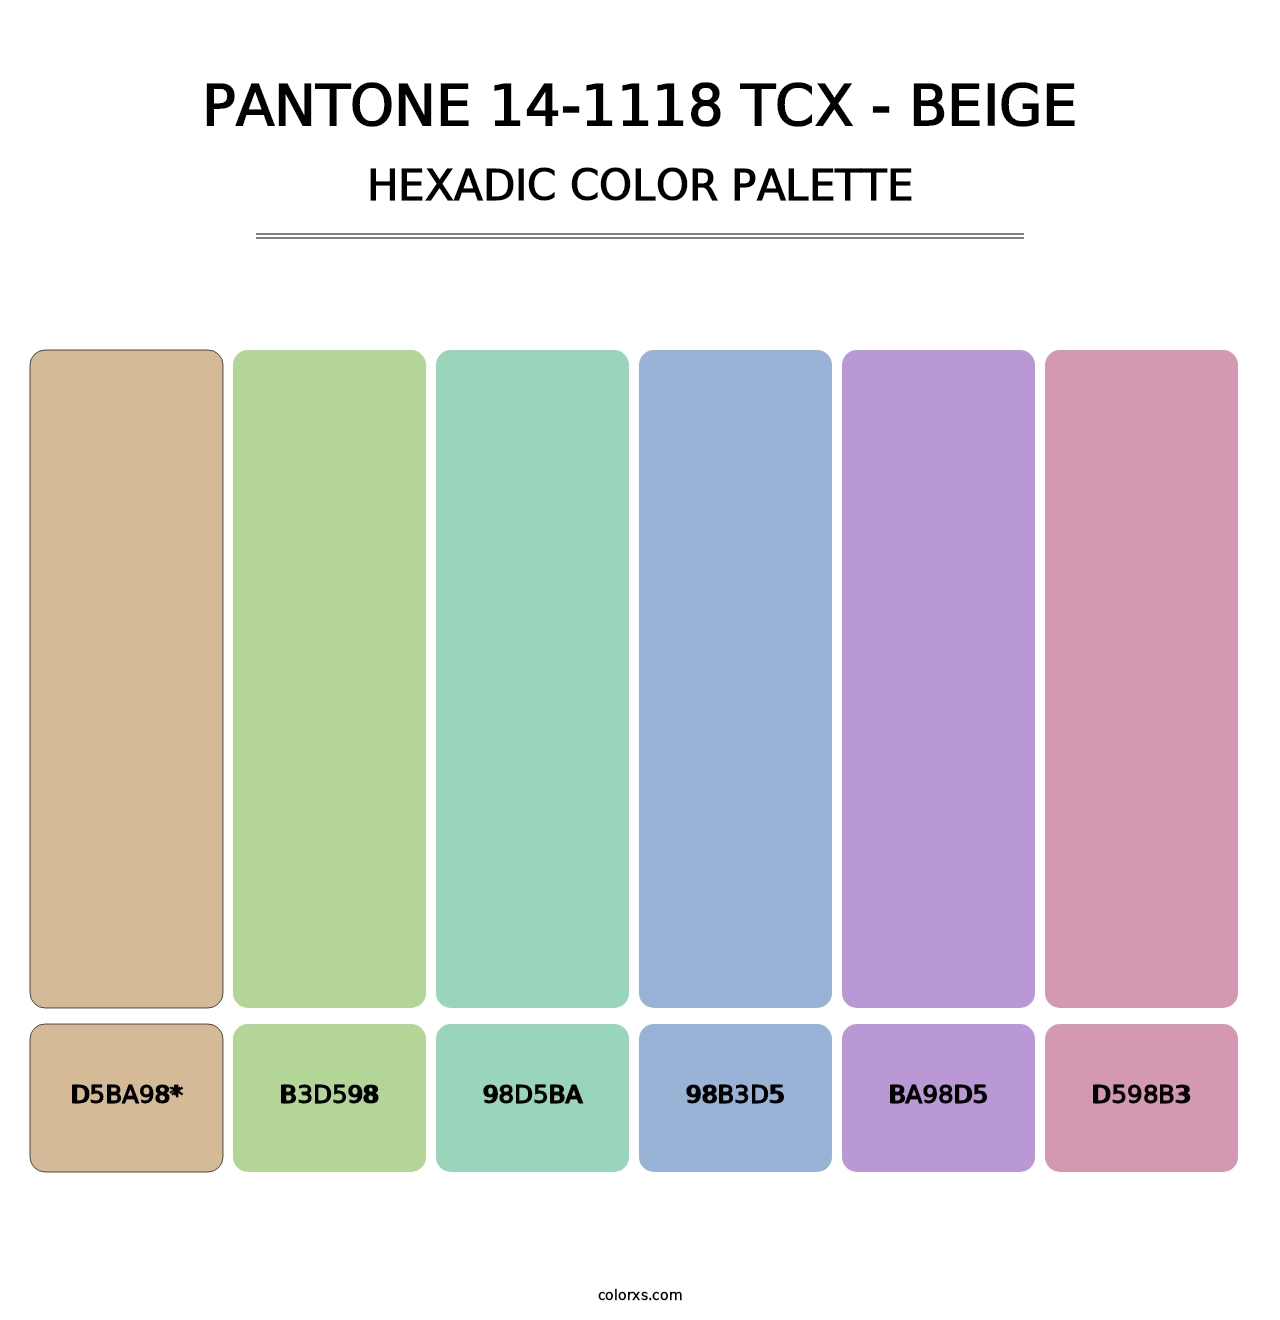 PANTONE 14-1118 TCX - Beige - Hexadic Color Palette